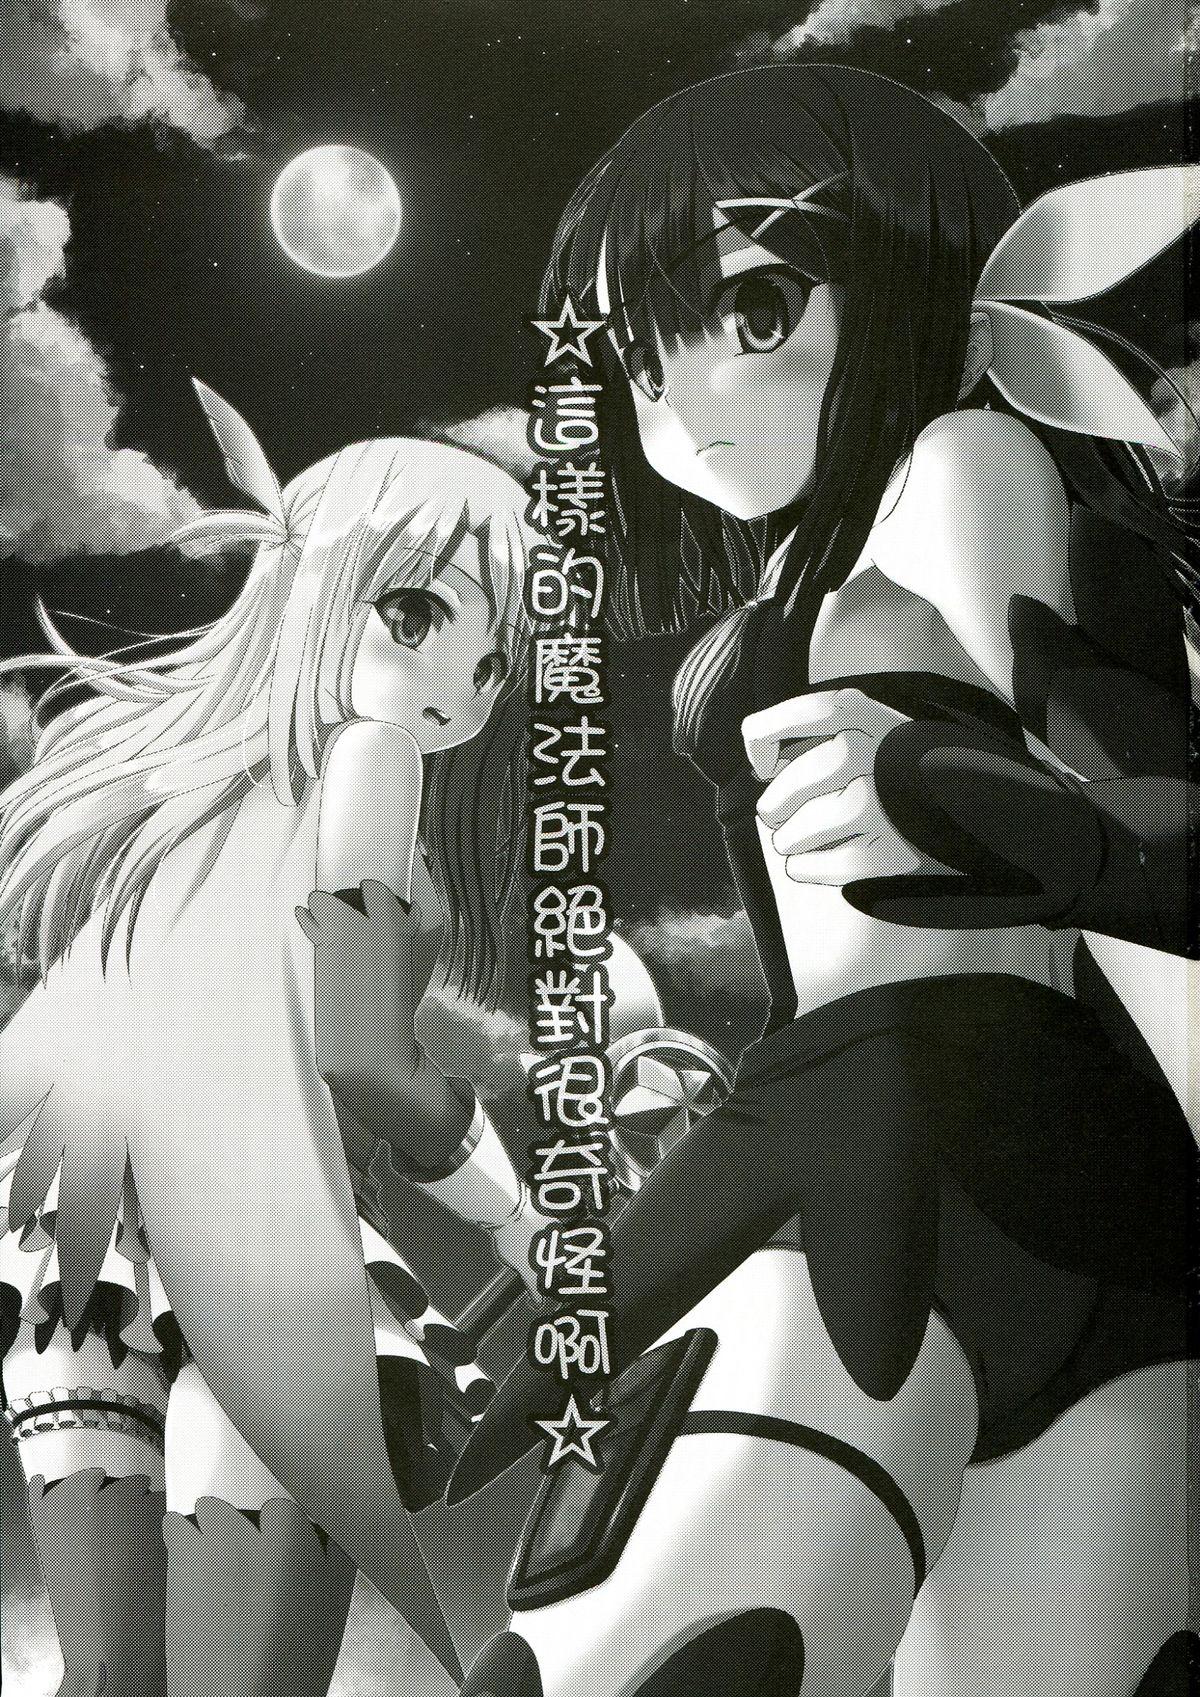 Joven ☆ Konna Mahou Tsukai nante Zettai okashii yo ☆ - Fate kaleid liner prisma illya Nurumassage - Page 3